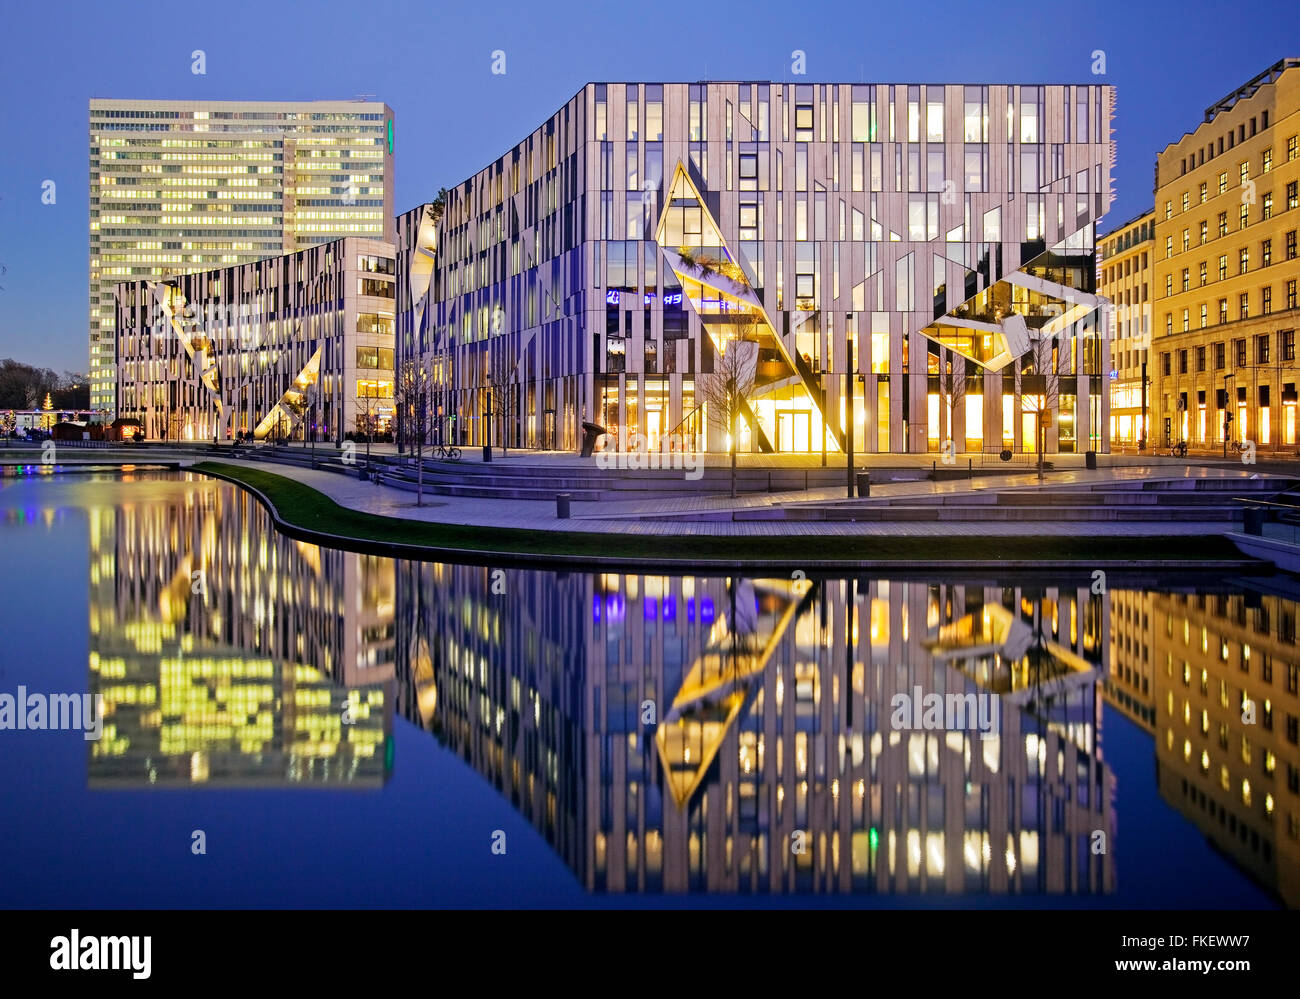 Dreischeibenhaus and Kö-Bogen office and retail complex by architect Daniel Libeskind, Düsseldorf, North Rhine-Westphalia Stock Photo